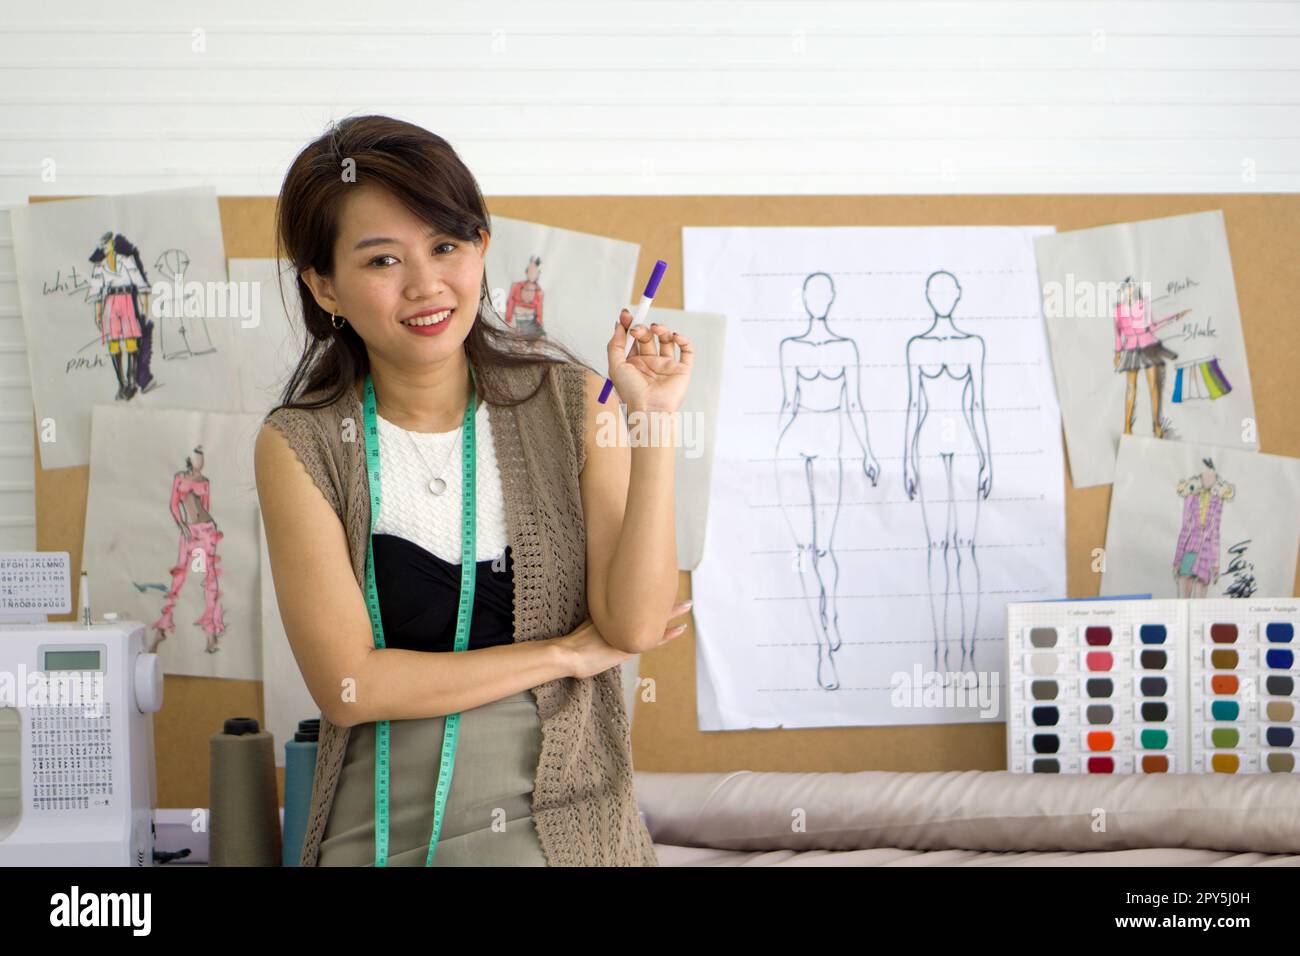 Junger Modedesigner, der einen magischen Stift mit einem Lächeln hält. Muster für den Katalog mit Tüchern und Farbproben befinden sich auf Korkplatten. Asiatische Frau, die in der Textilfabrik arbeitet. Stockfoto